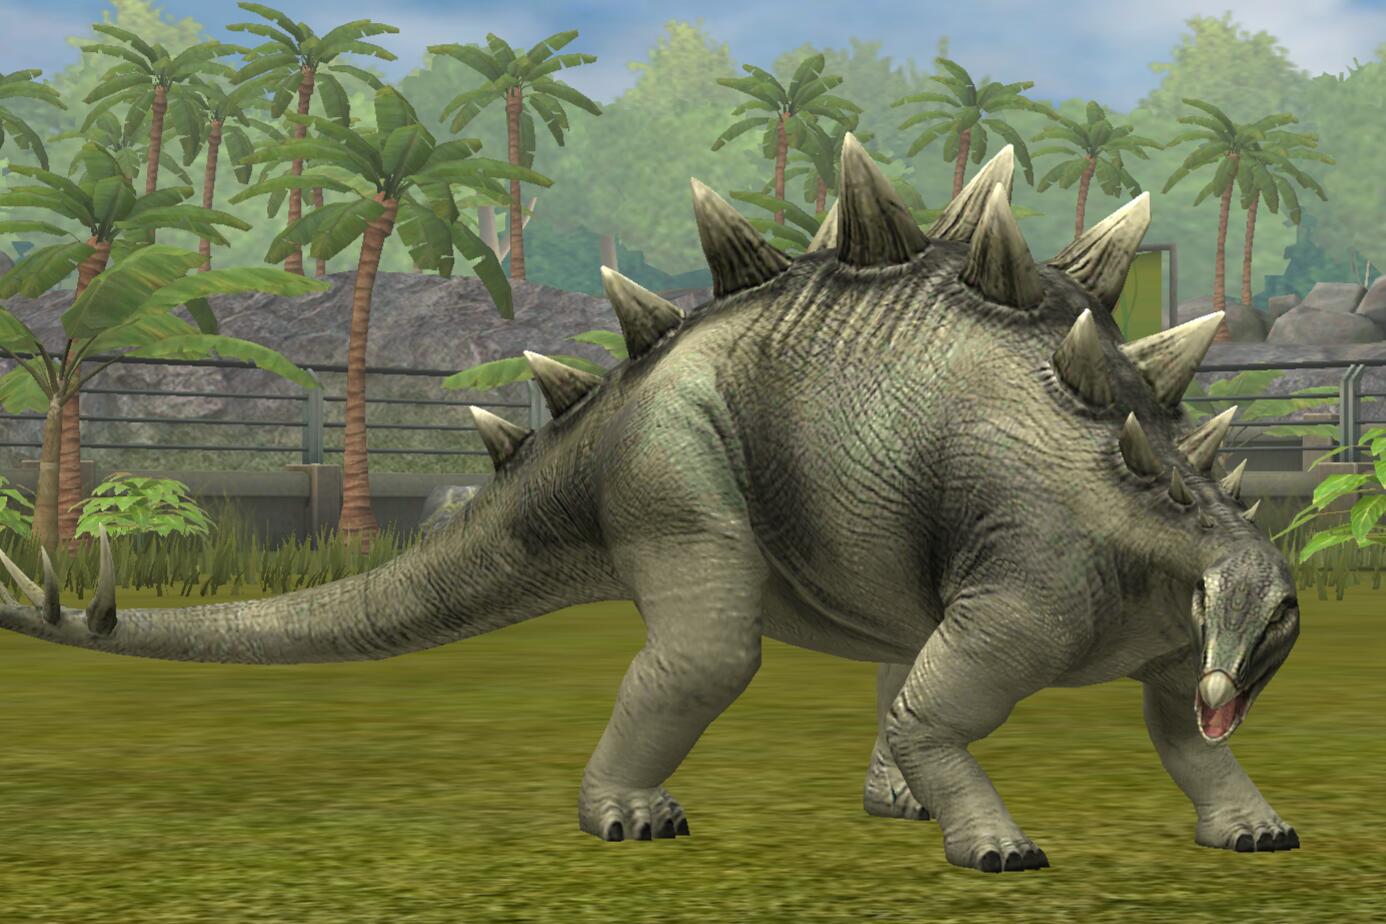 Tuojiangosaurusjw Tg Jurassic Park Wiki Fandom Powered By Wikia 